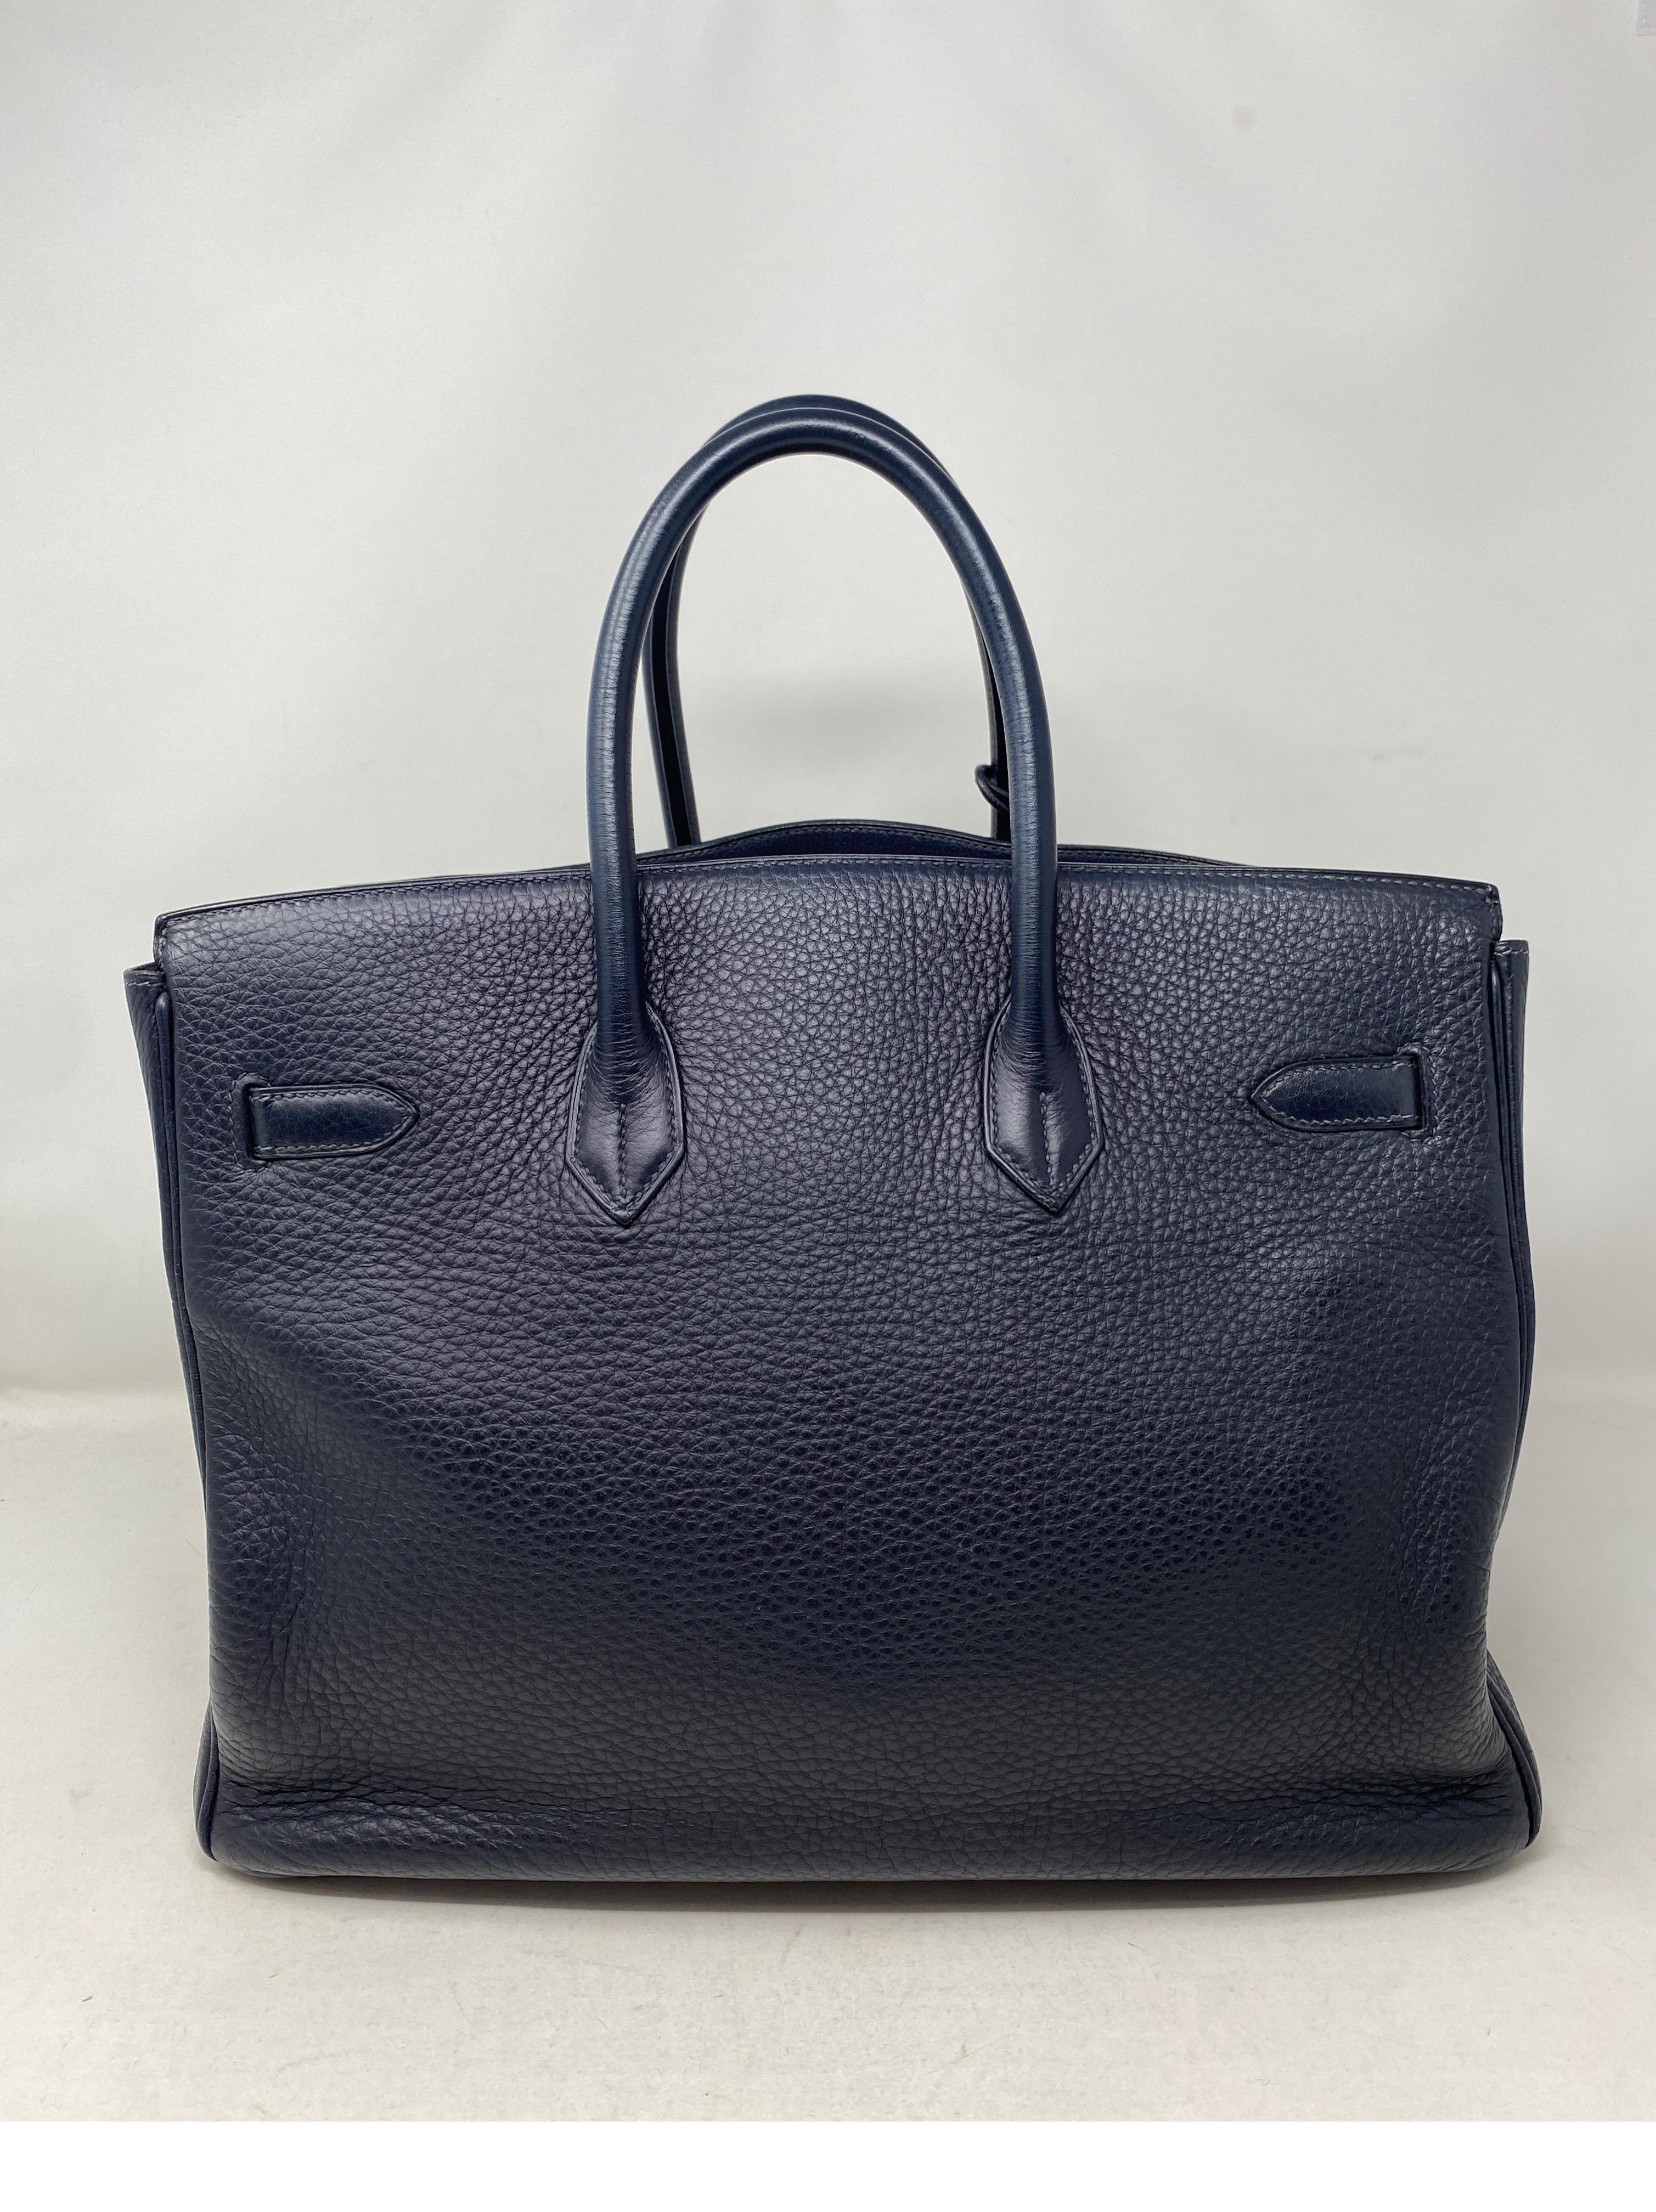 Black Hermes Birkin Bleu Nuit 35 Bag